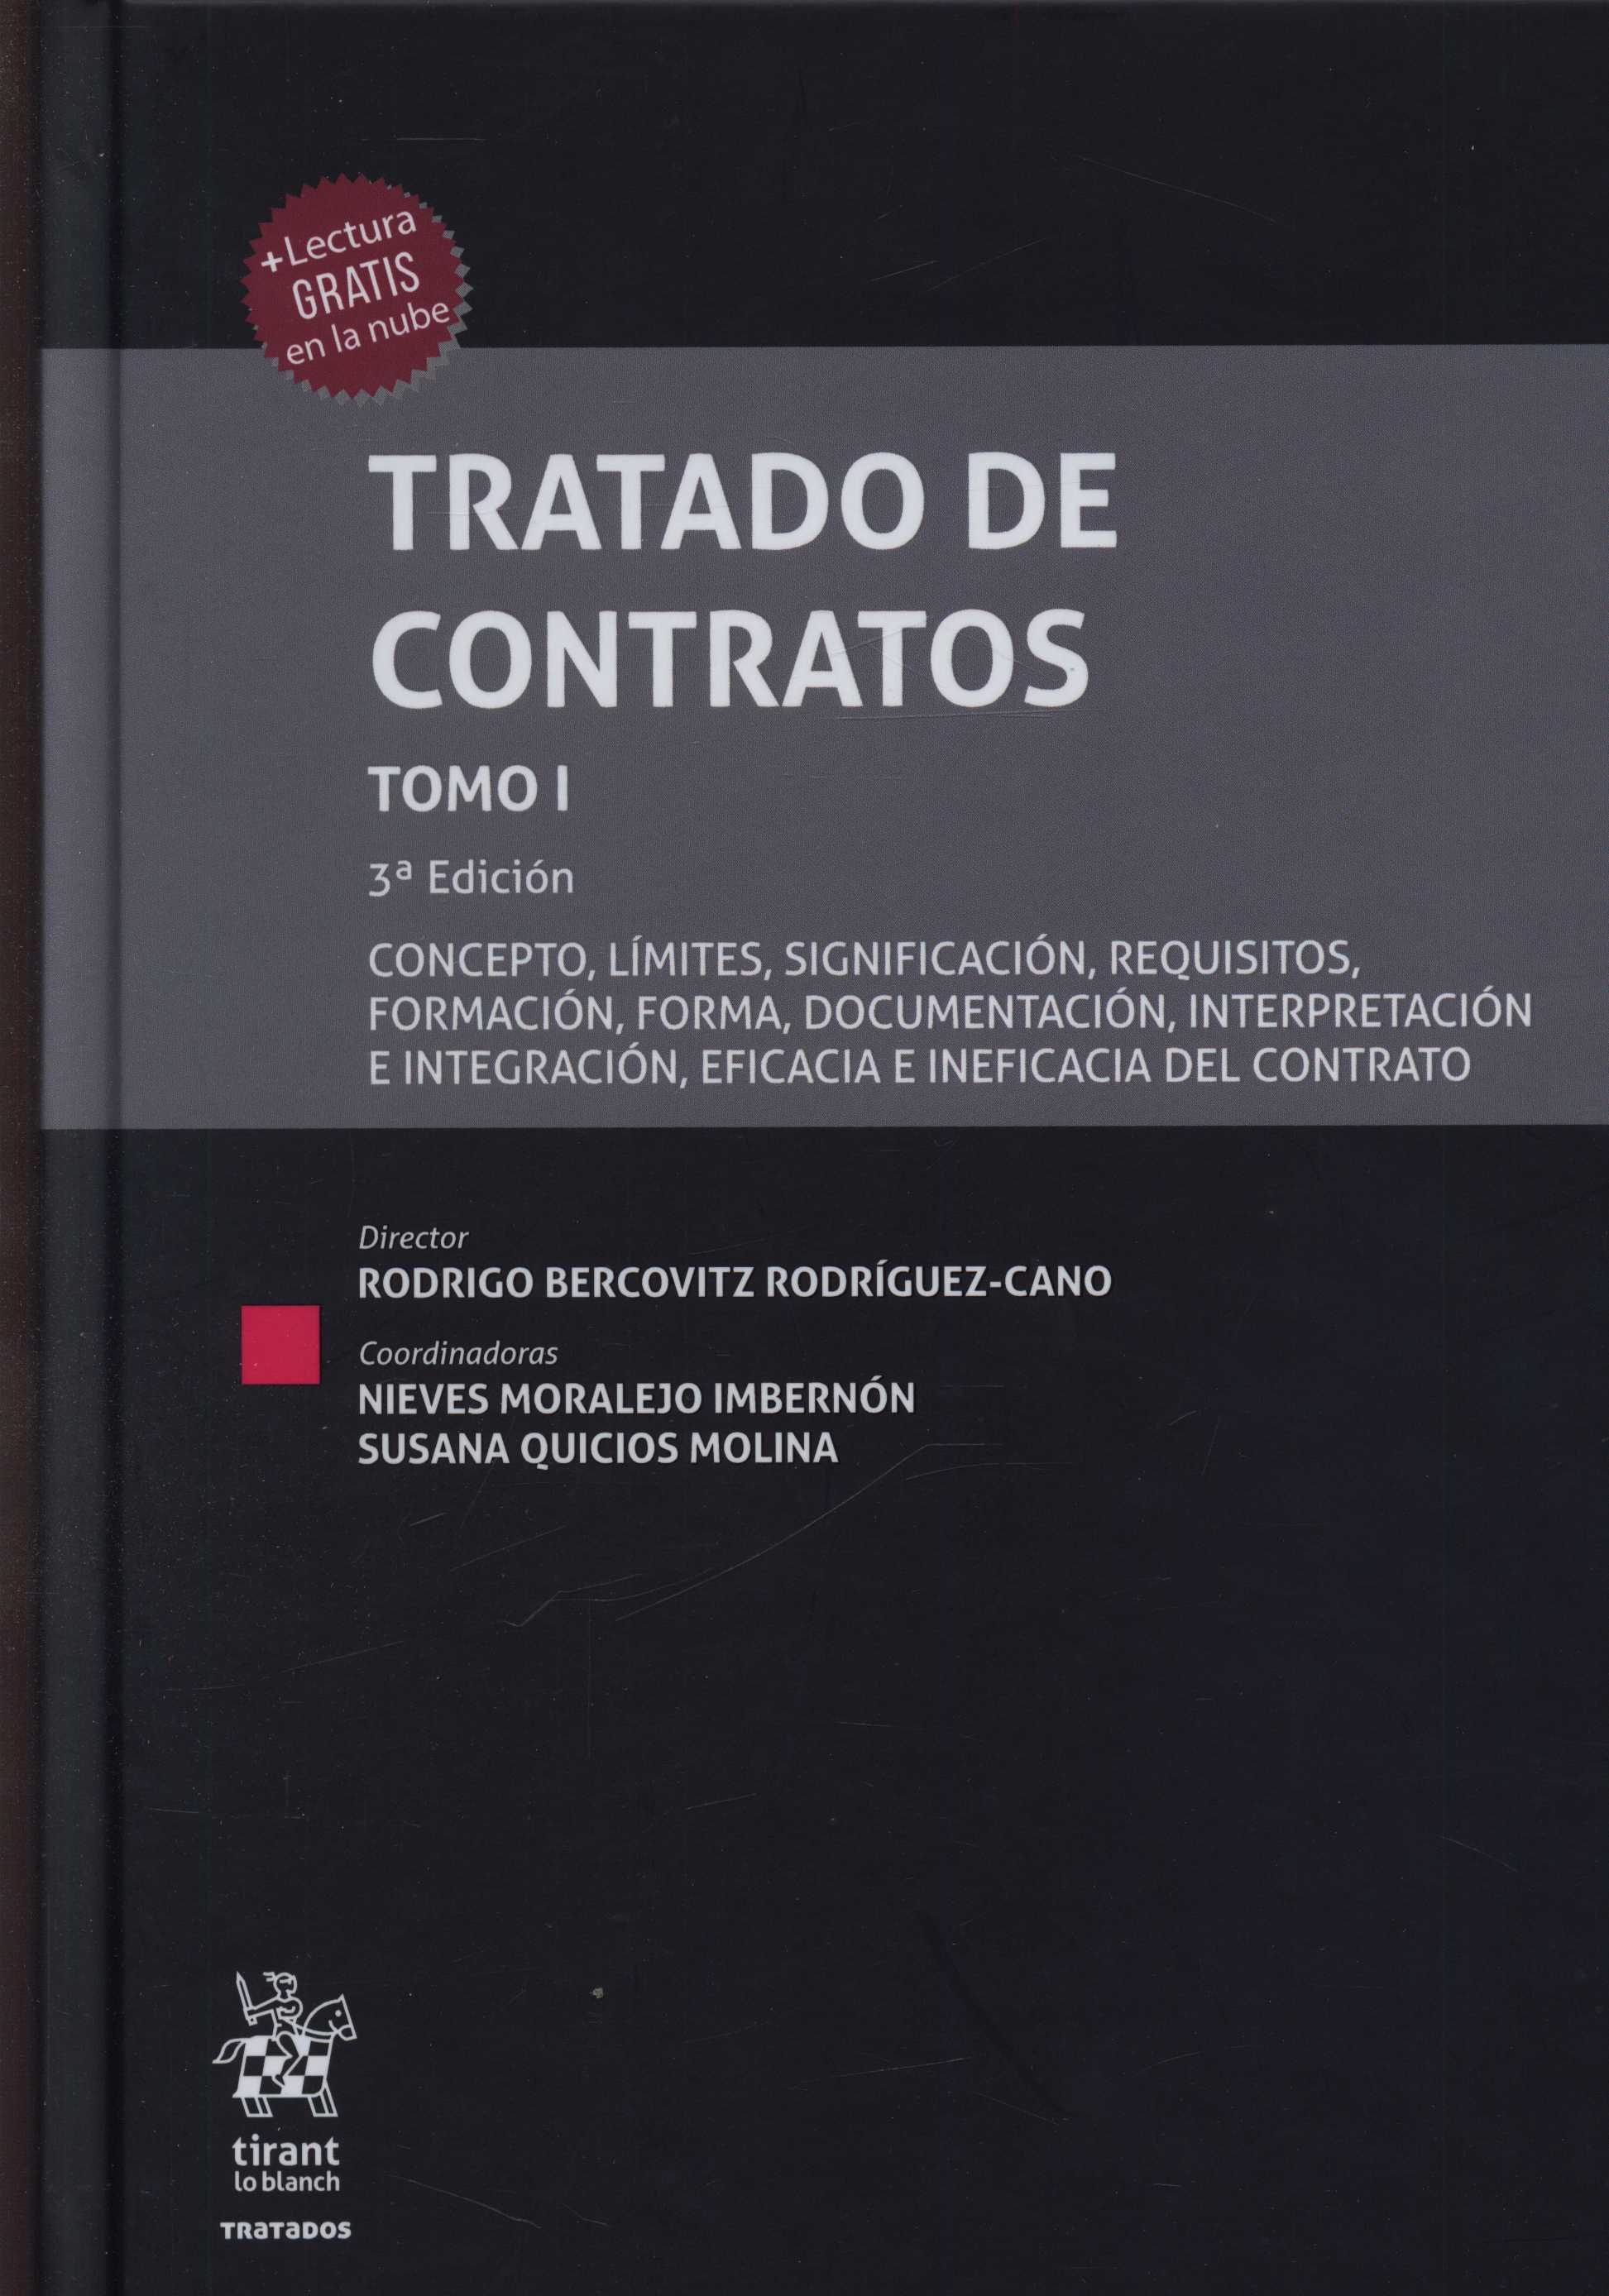 Imagen de portada del libro Tratado de contratos